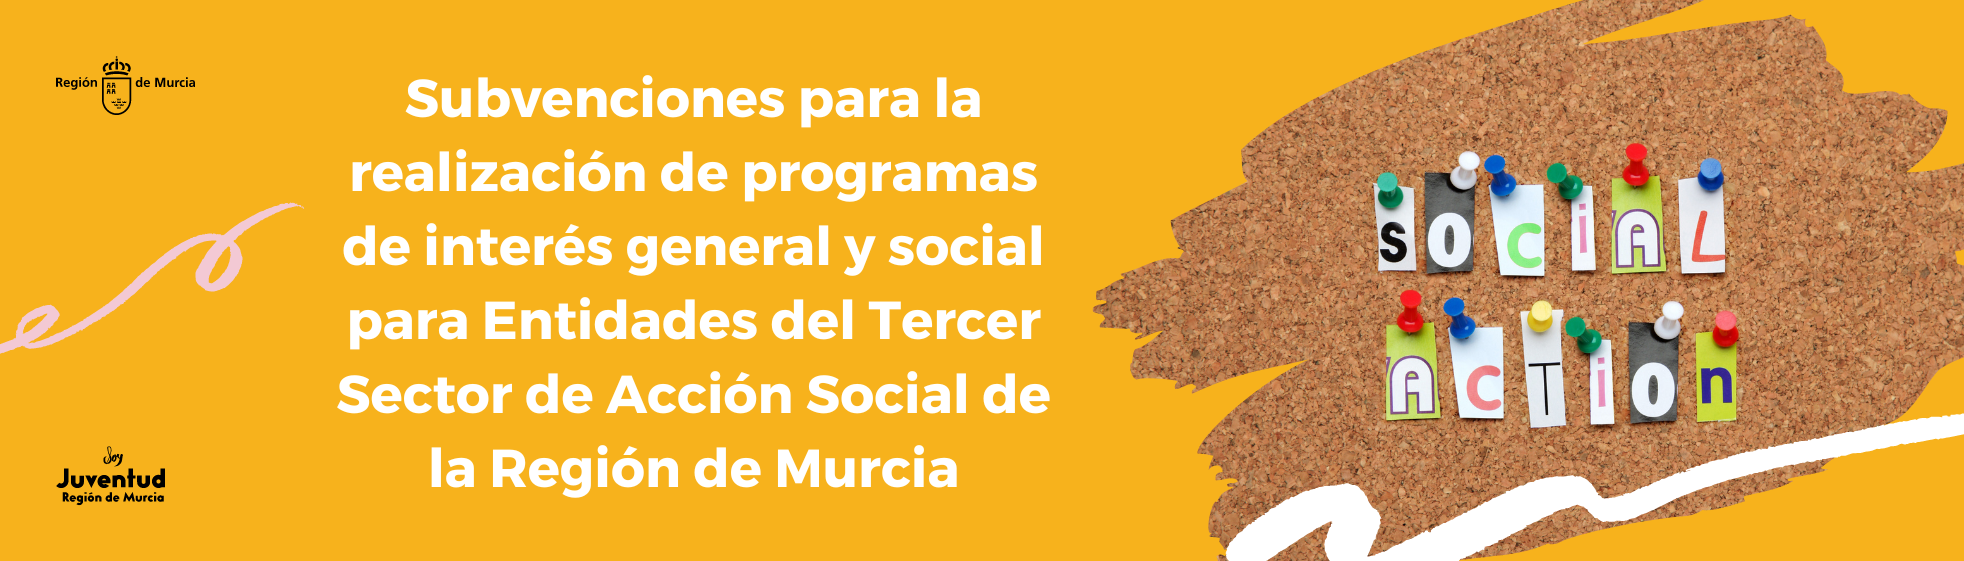 Subvenciones para la realización de programas de interés general y social para Entidades del Tercer Sector de Acción Social de la Región de Murcia